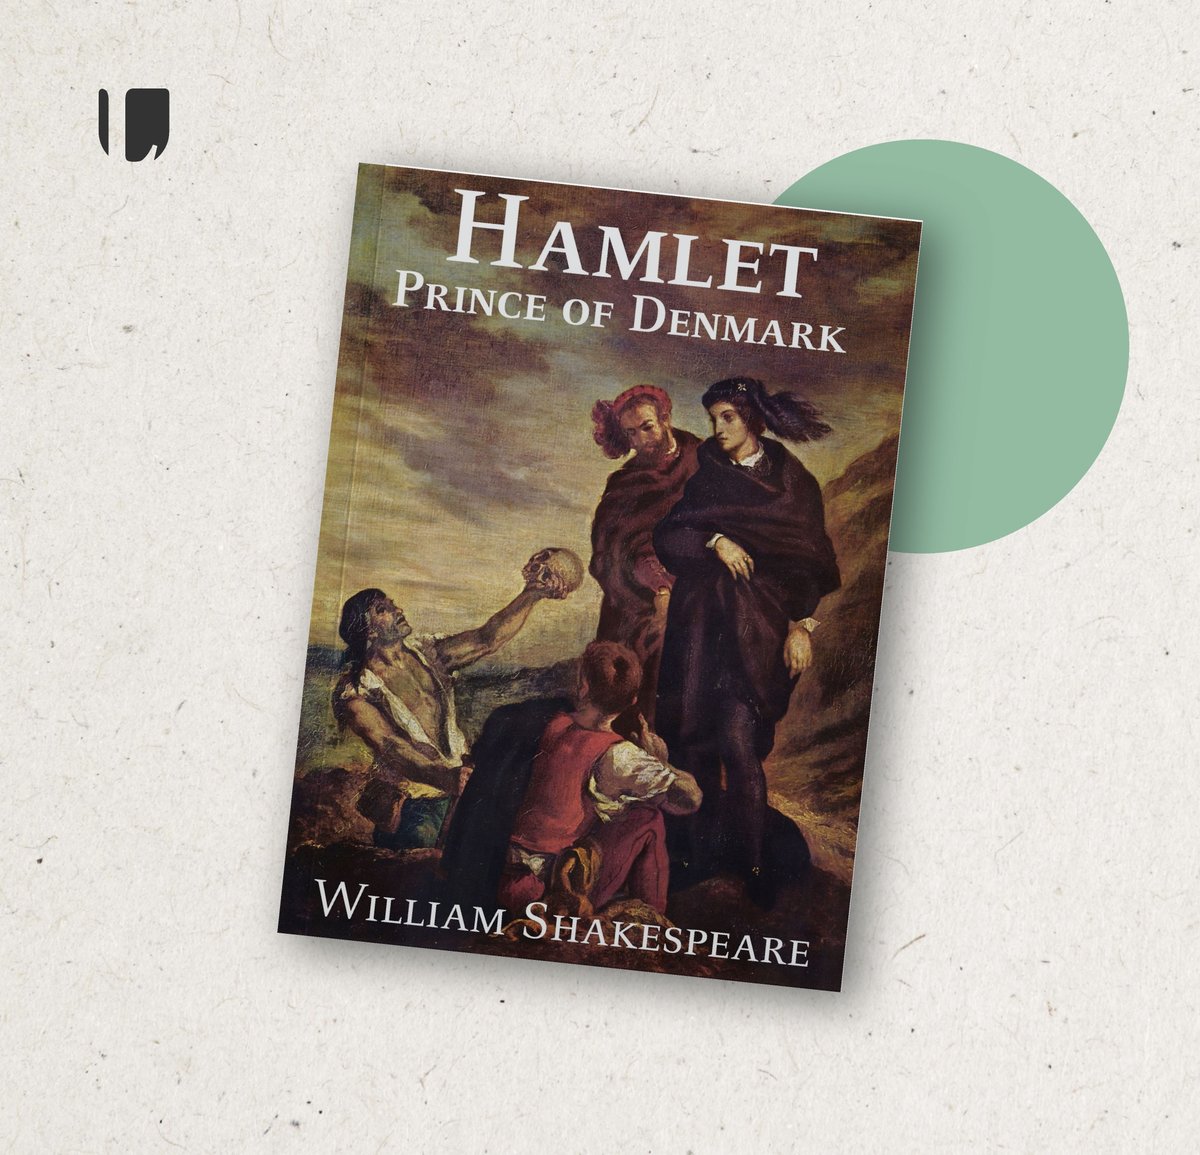 'Hoy recordamos a #Shakespeare con fragmentos de Hamlet. Puedes descargarlos y escucharlos en el siguiente enlace: bit.ly/3U5aPls #Hamlet #Abril #clásicos